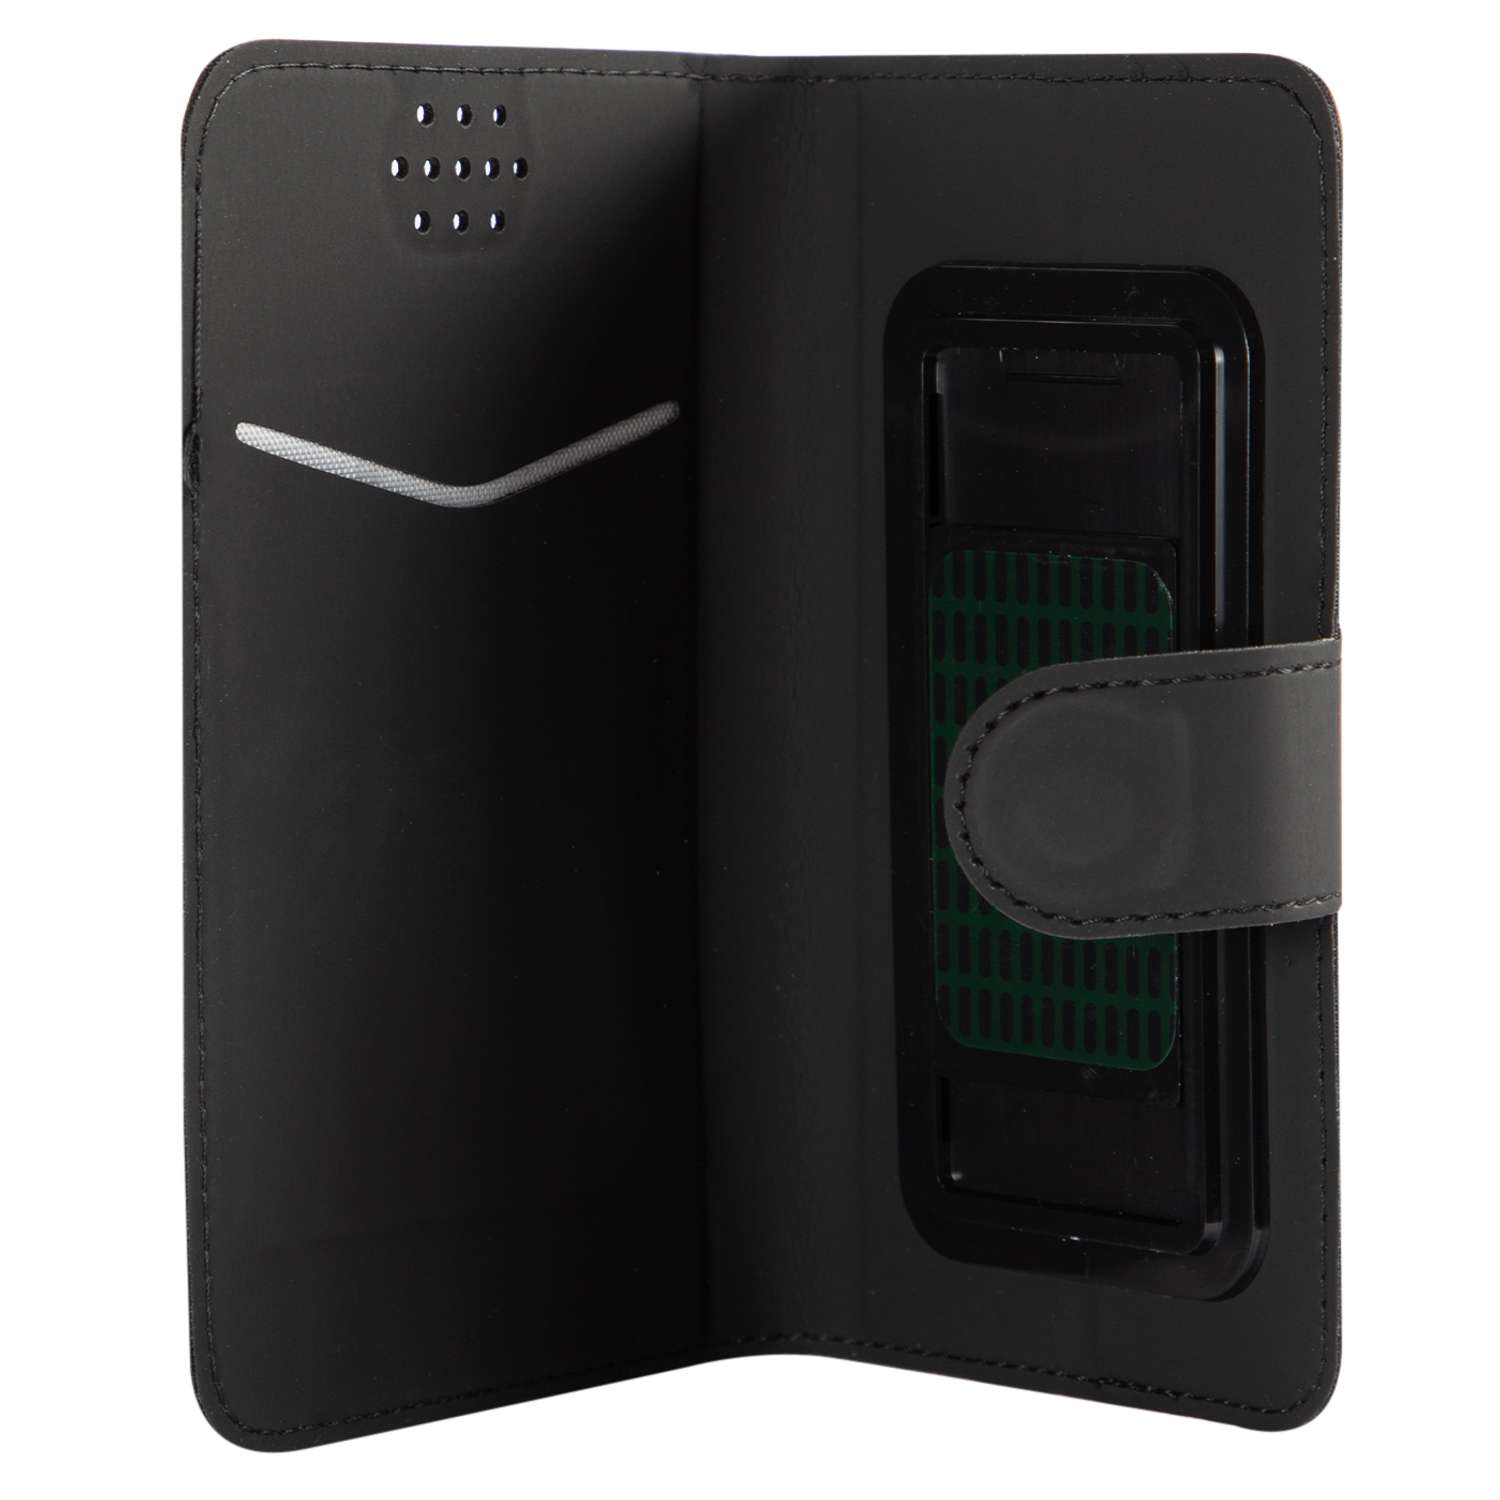 Чехол универсальный iBox UniMotion для телефонов 3.5-4.5 дюйма черный - фото 2